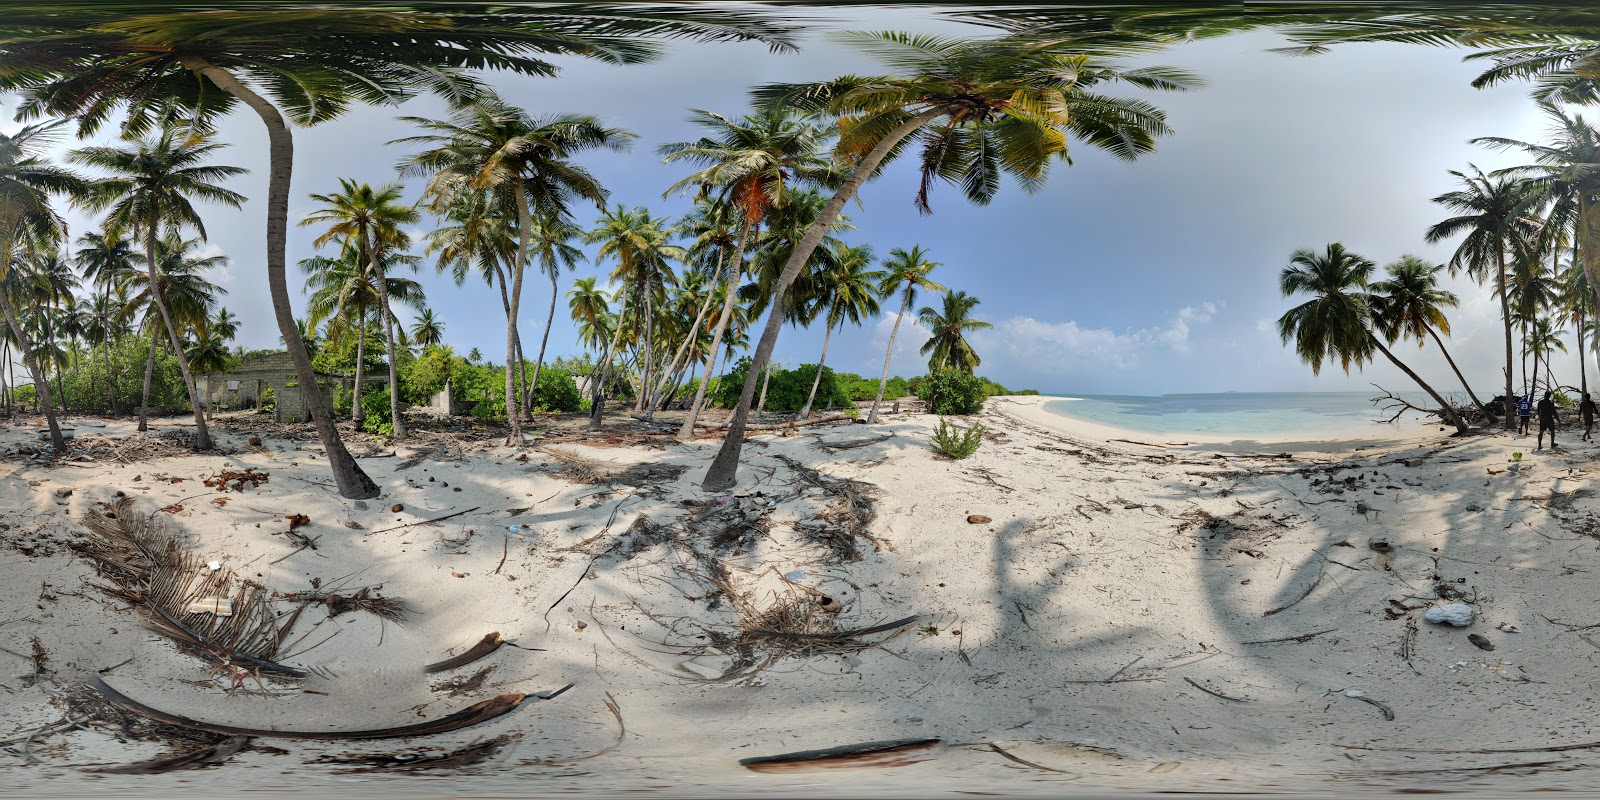 Zdjęcie Hathifushi beach dziki obszar